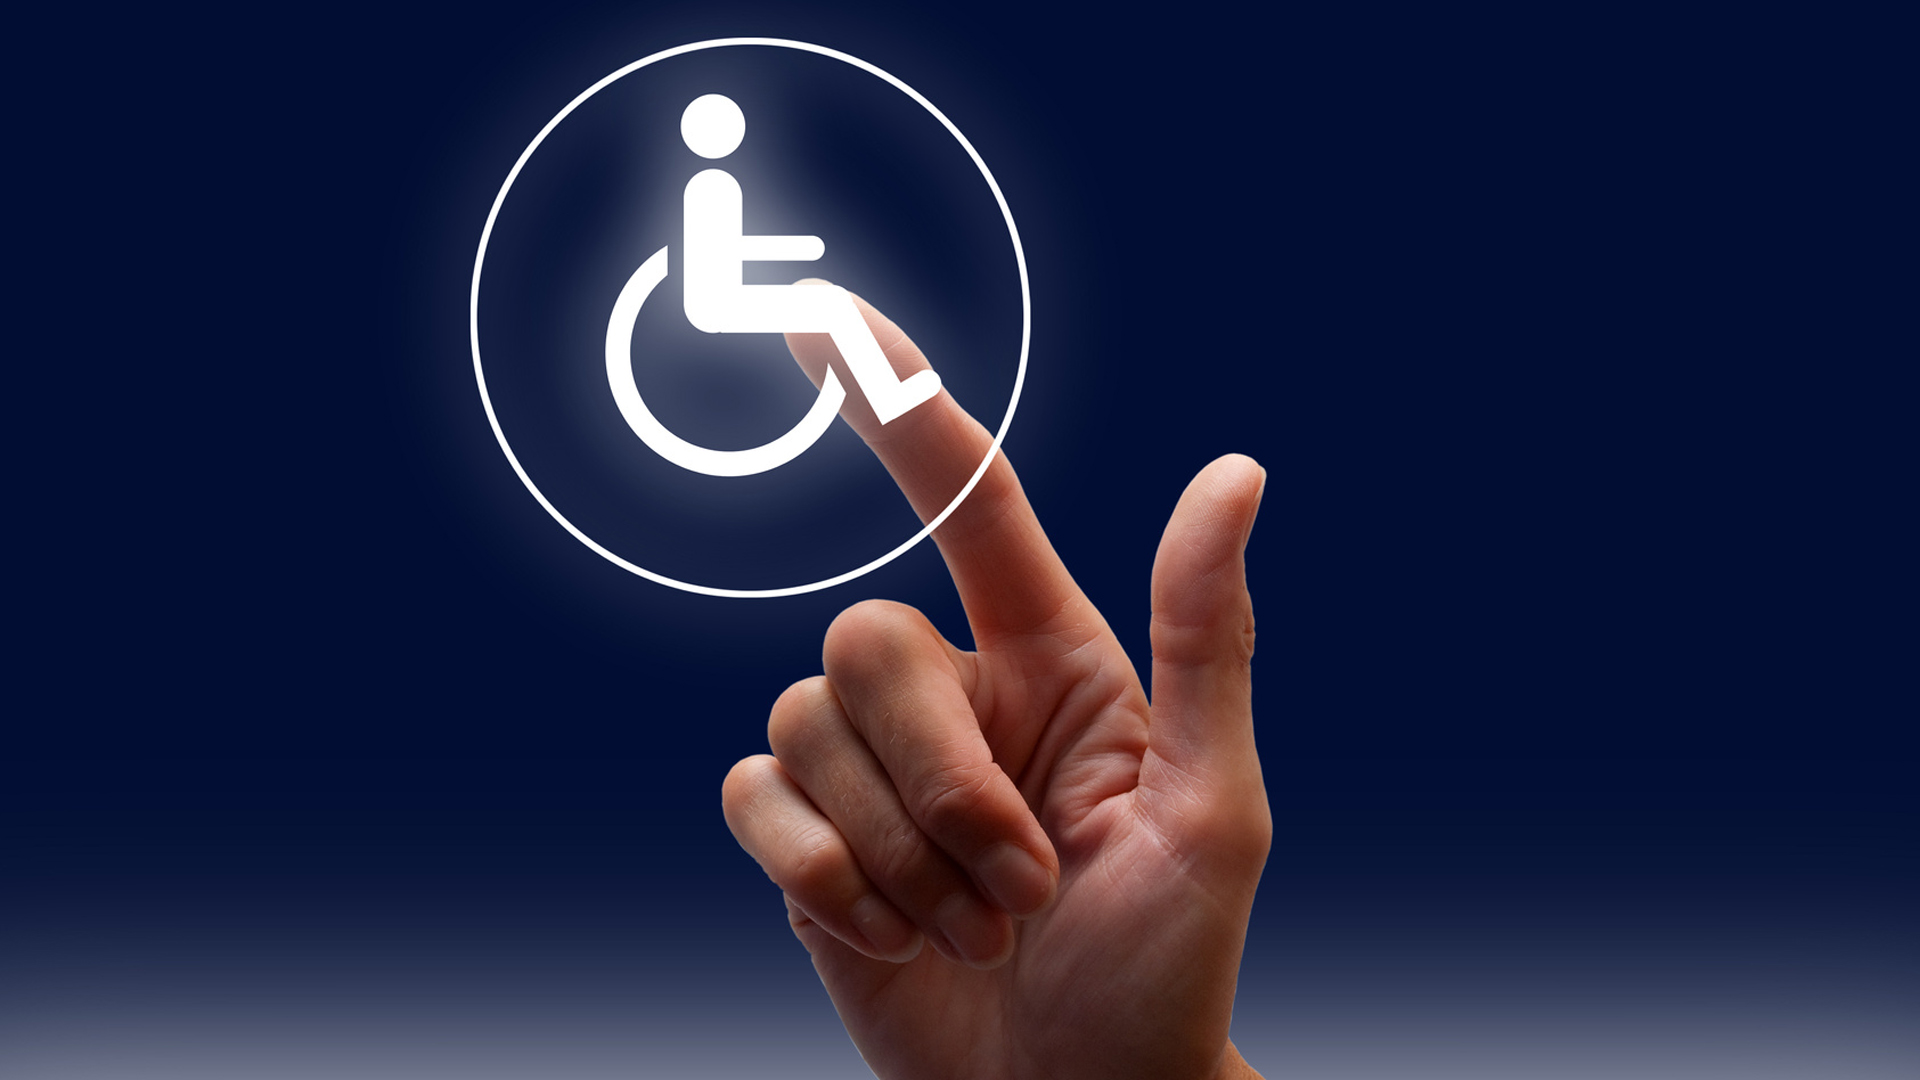 Mitmachen im Beirat für Menschen mit Behinderungen